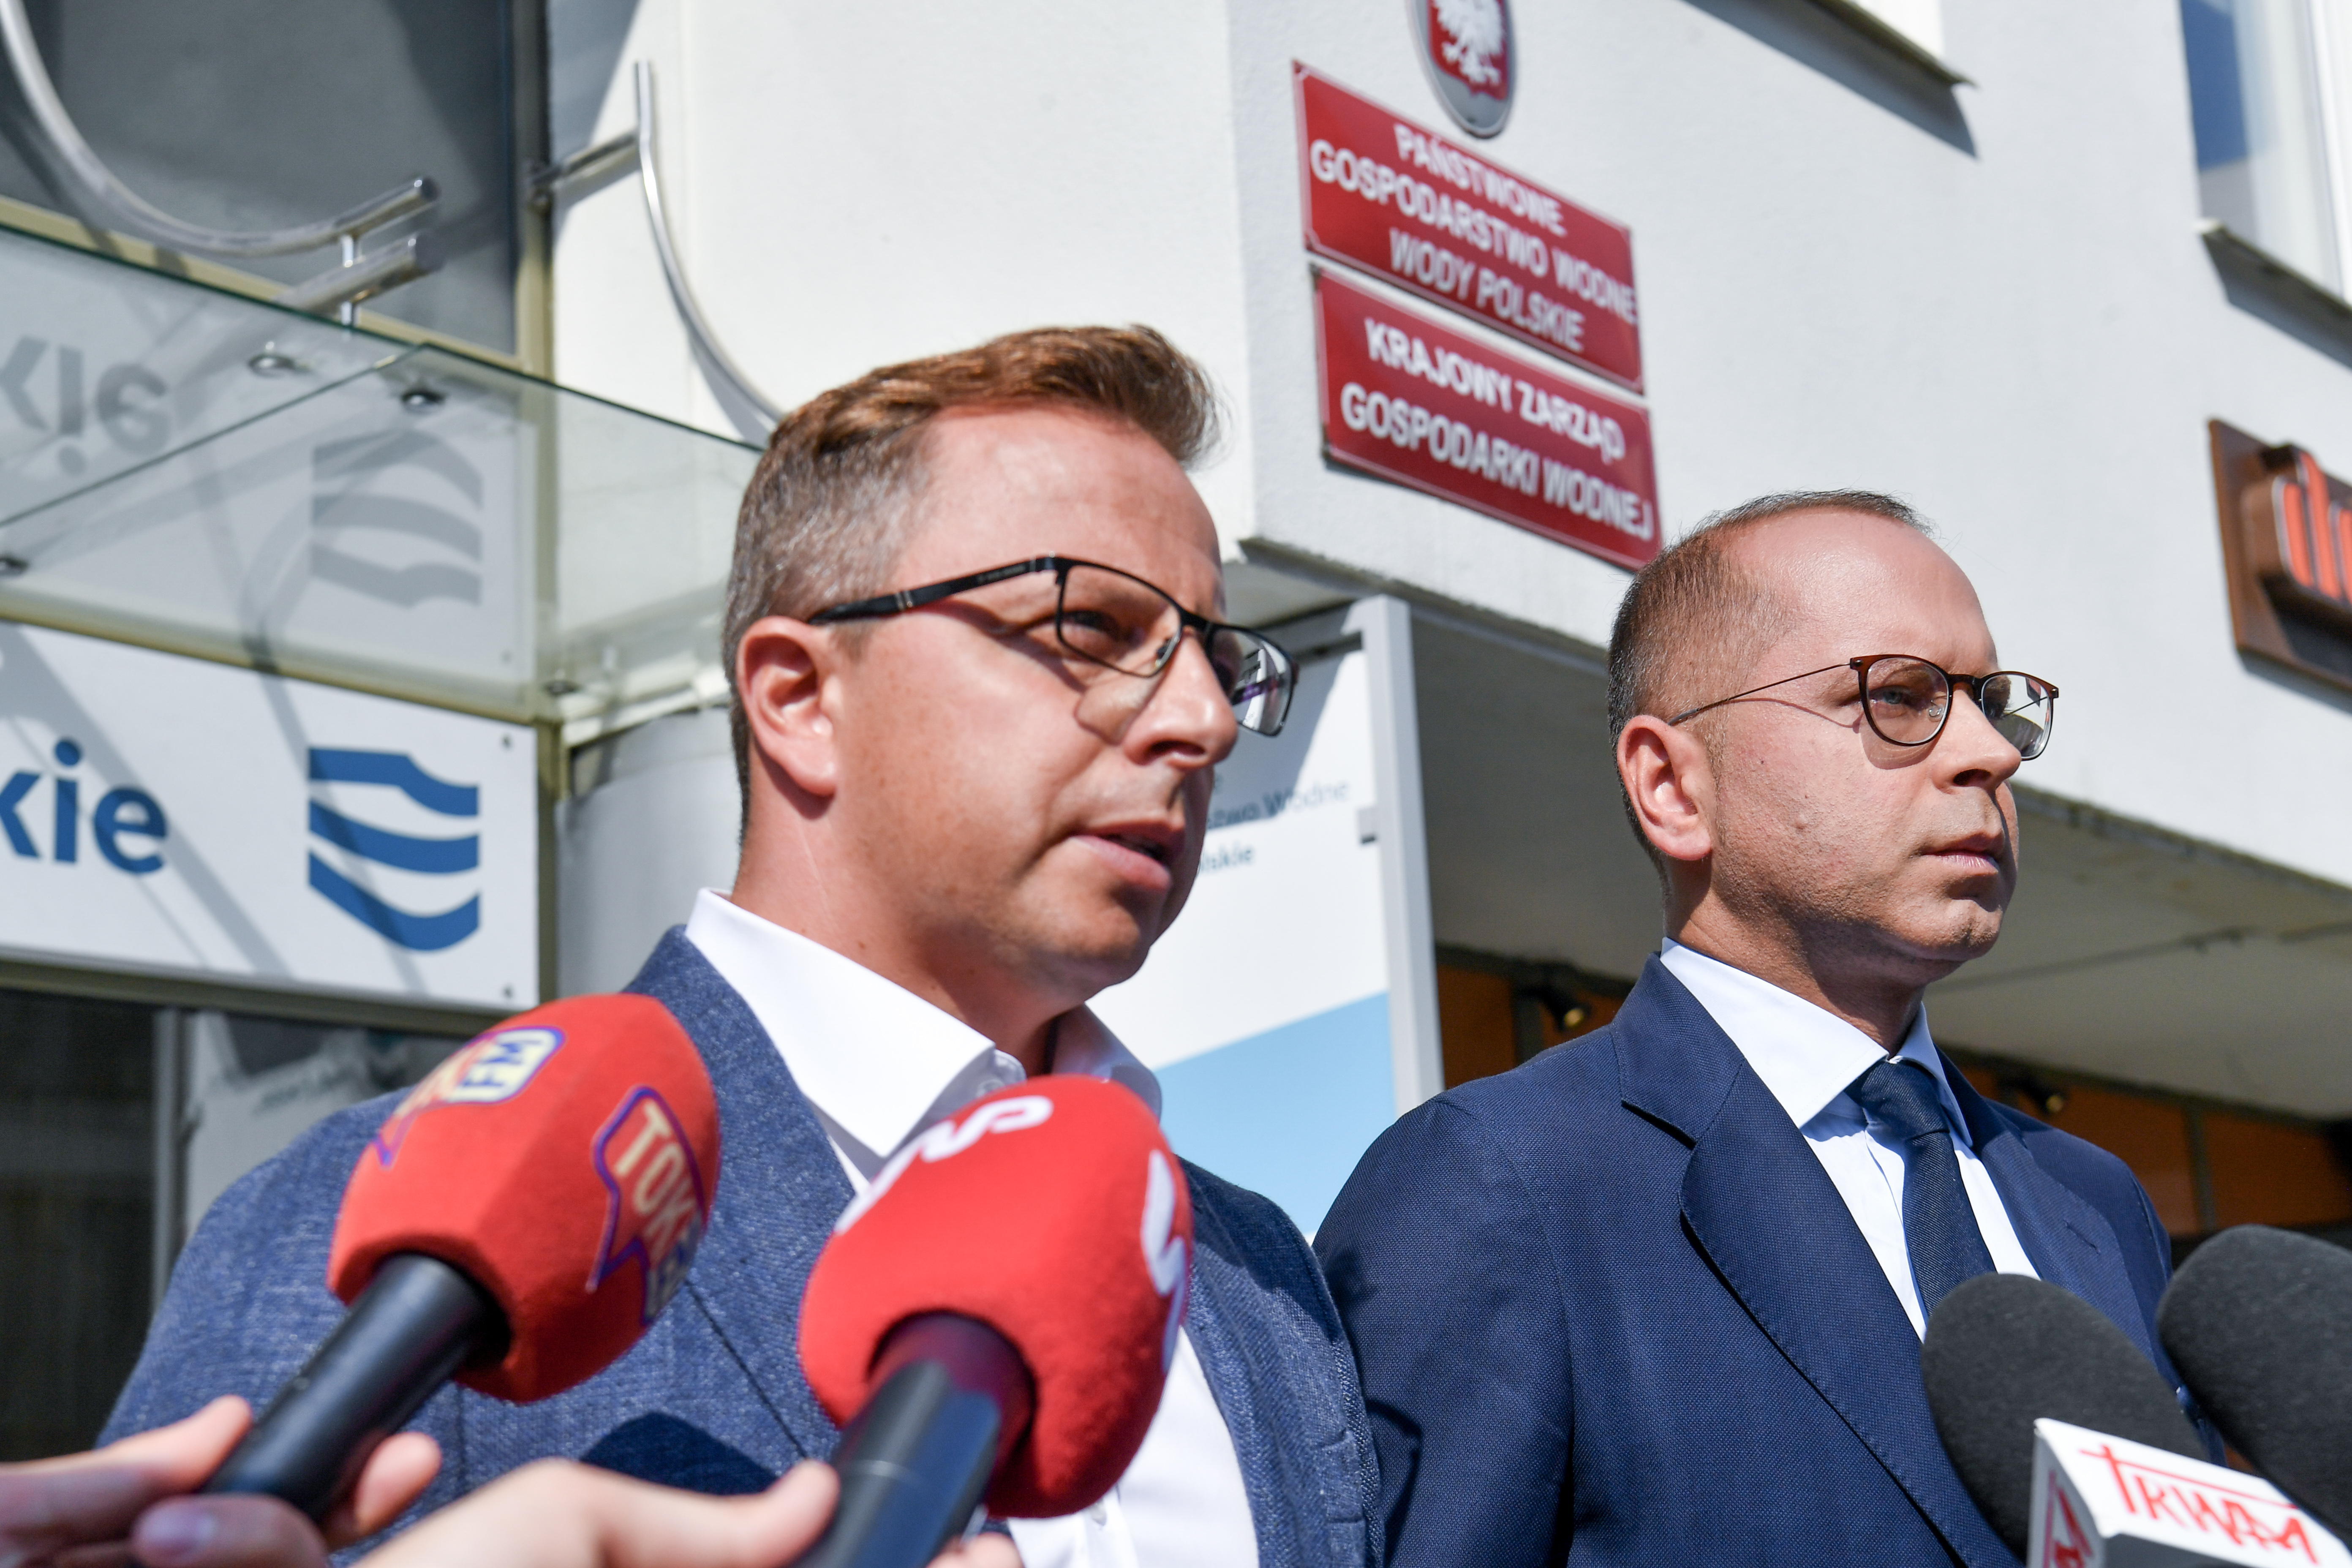 Posłowie KO Dariusz Joński i Michał Szczerba